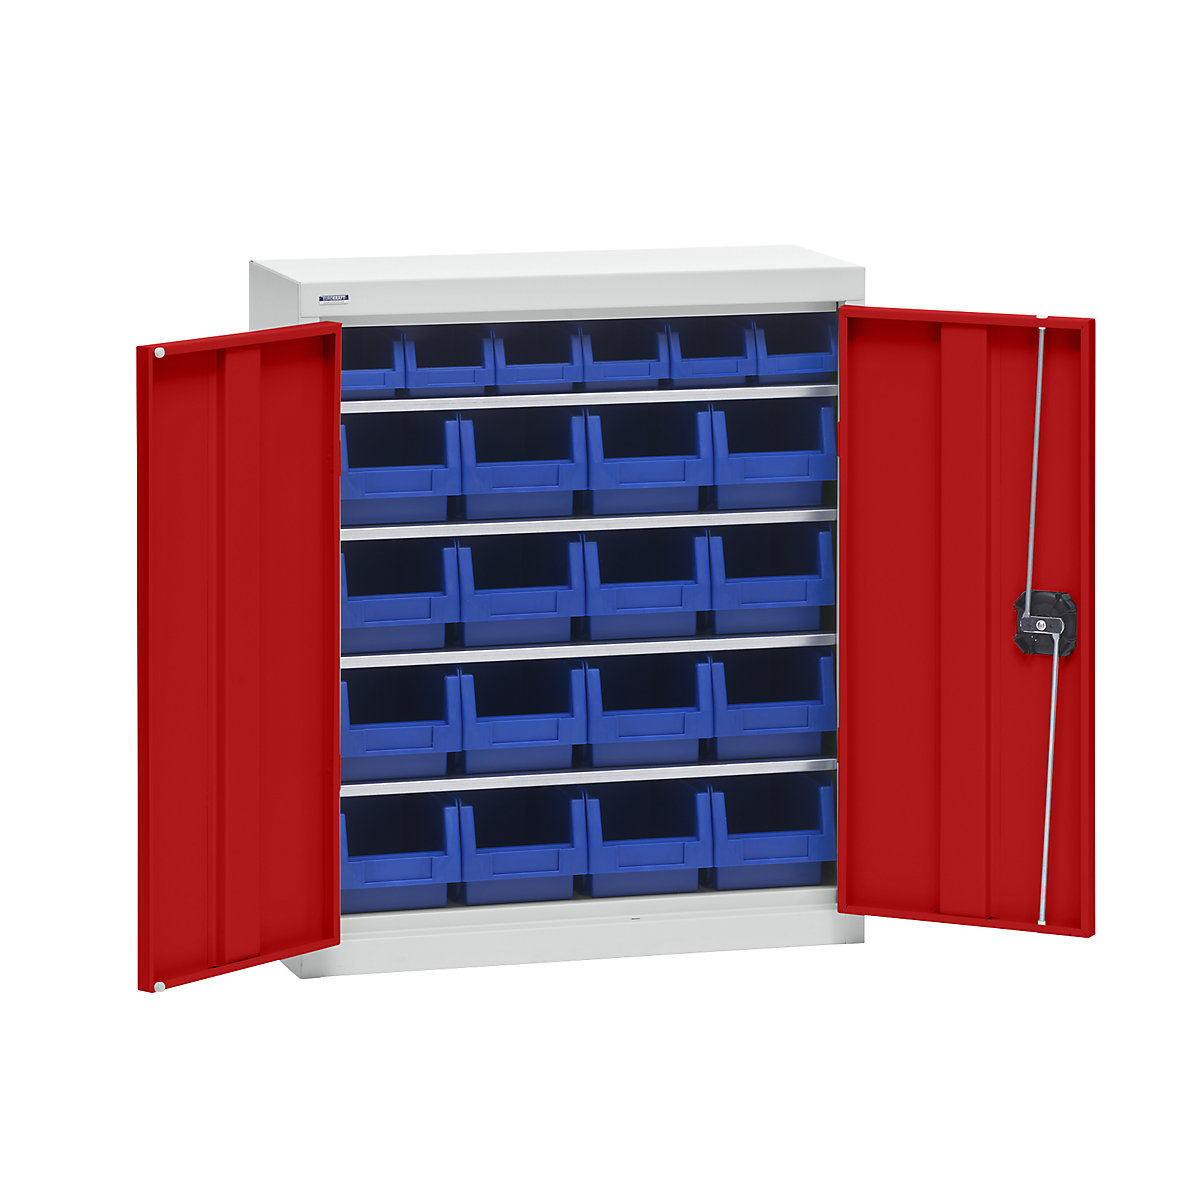 Materiaalkast met magazijnbakken – eurokraft pro, hoogte 780 mm, 4 legborden, lichtgrijs / verkeersrood-6